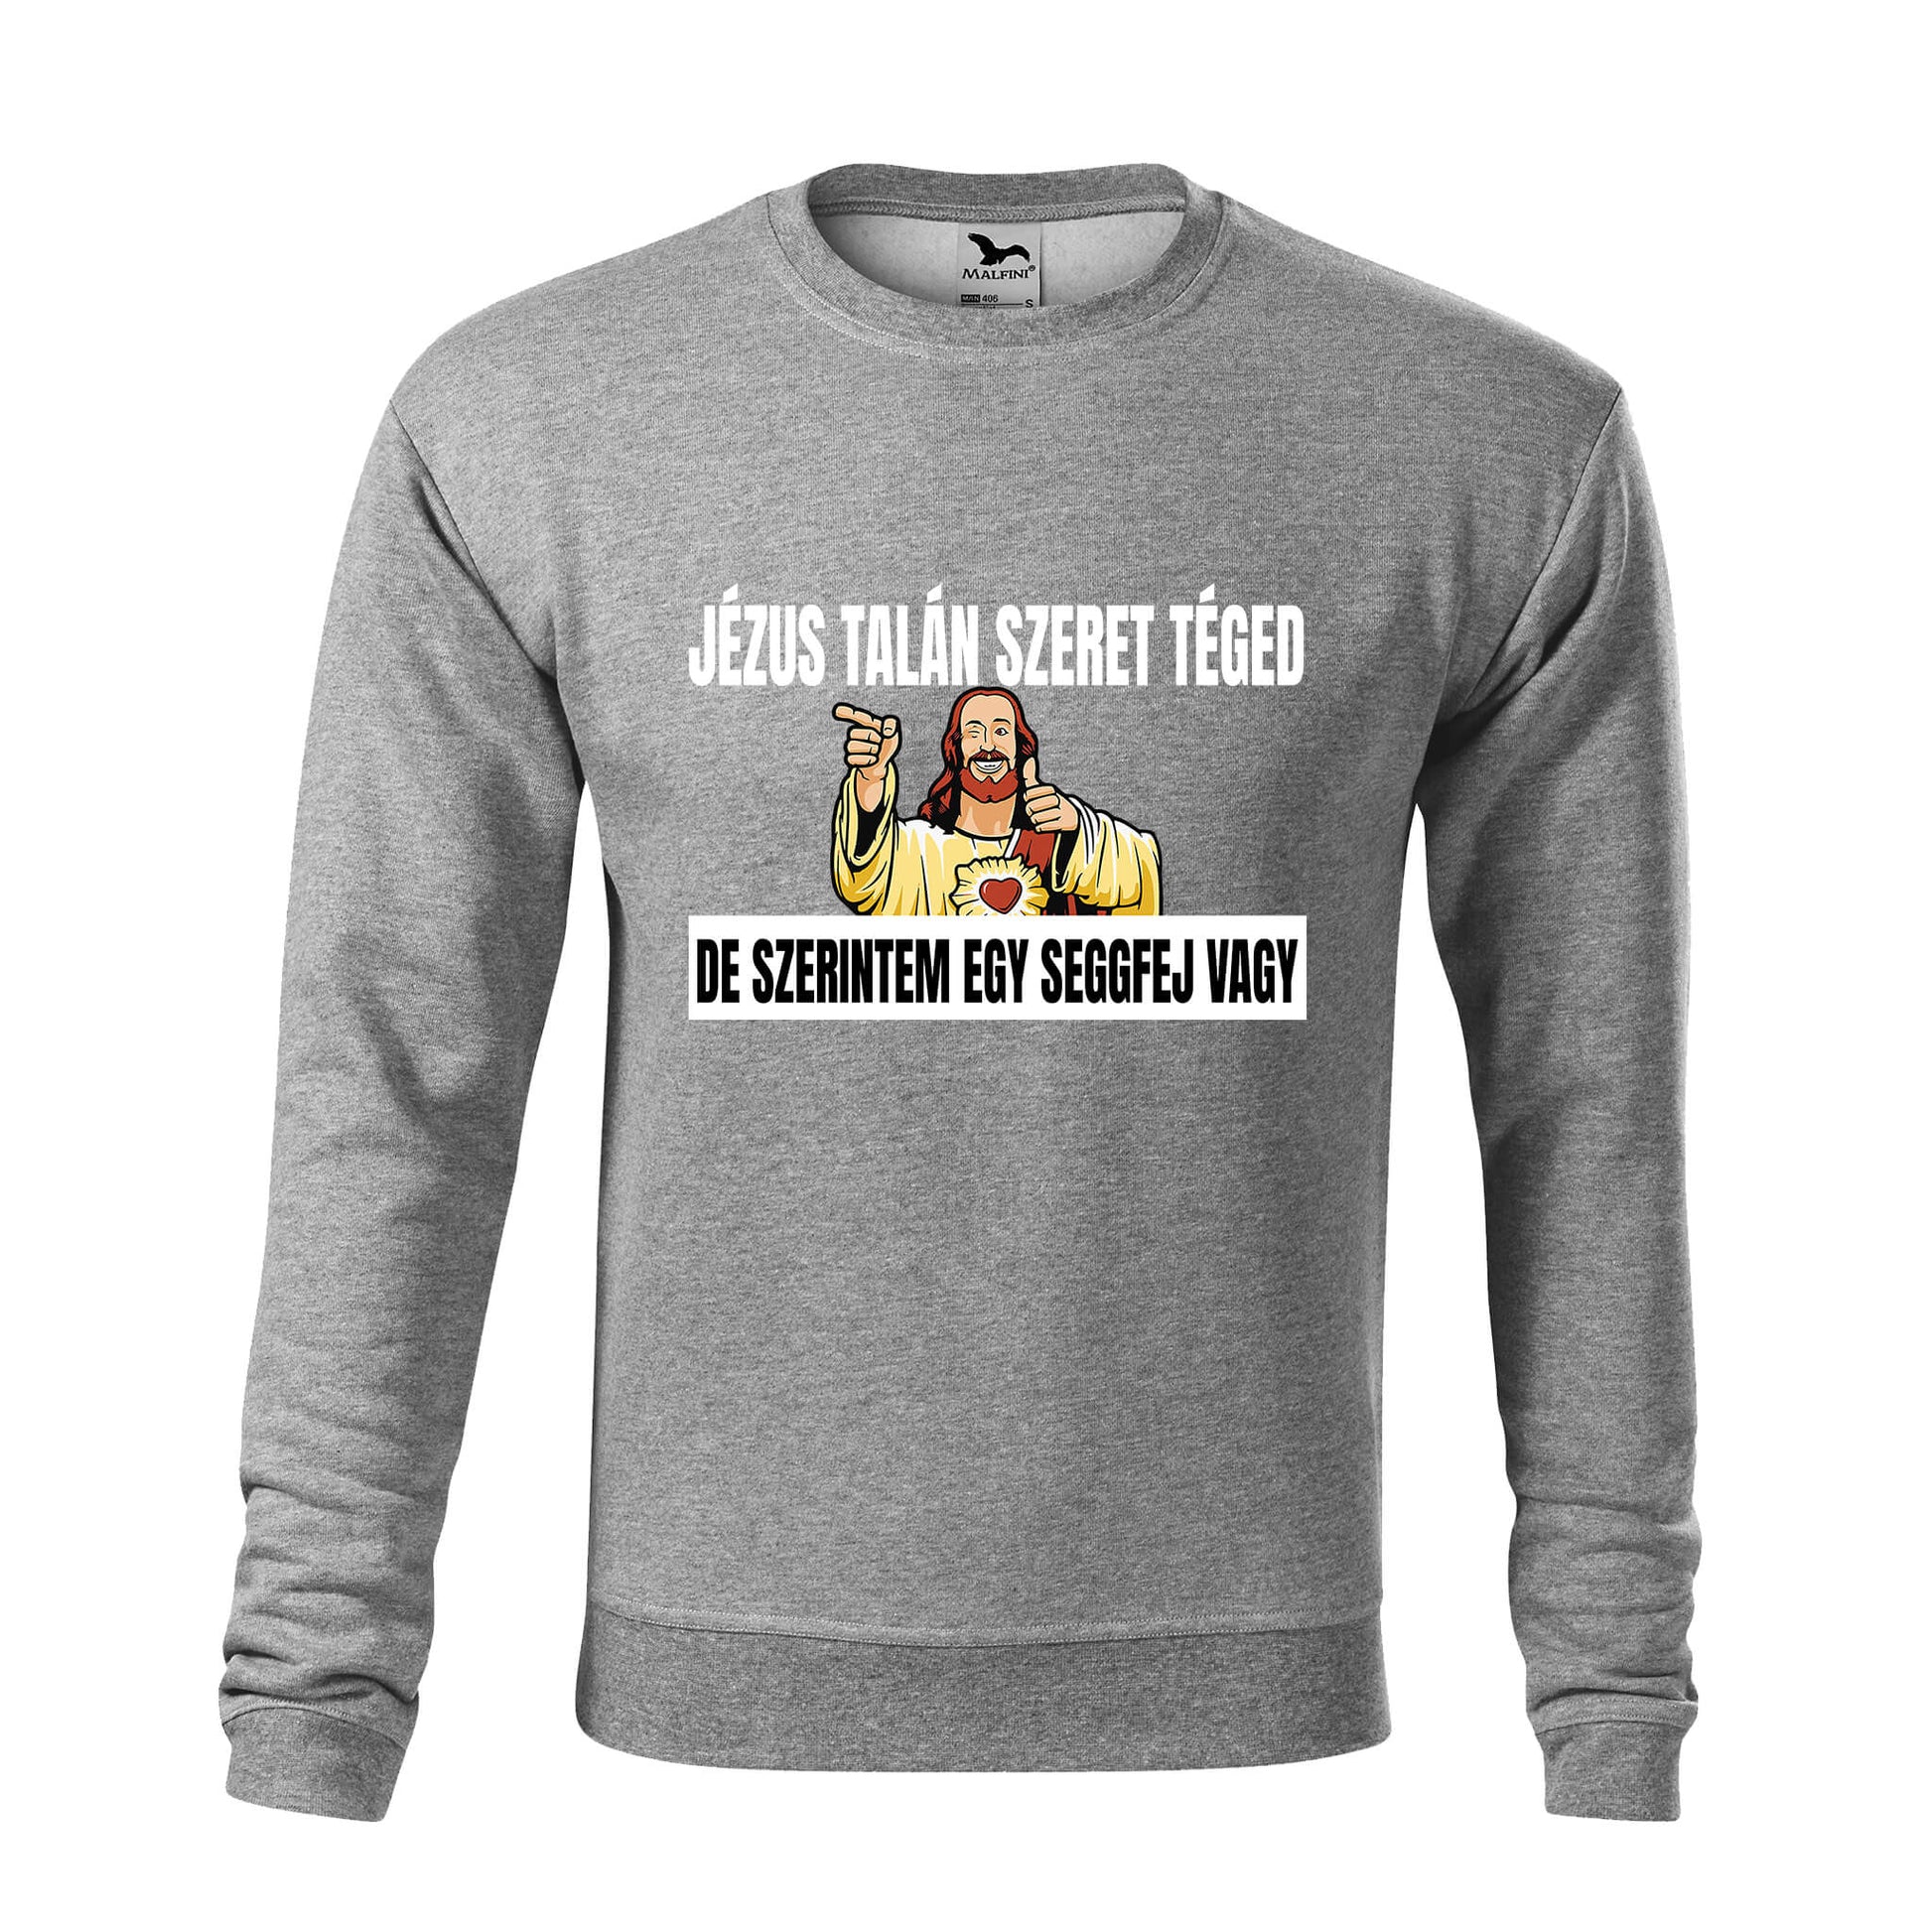 Jezus talan szeret teged sweatshirt - rvdesignprint